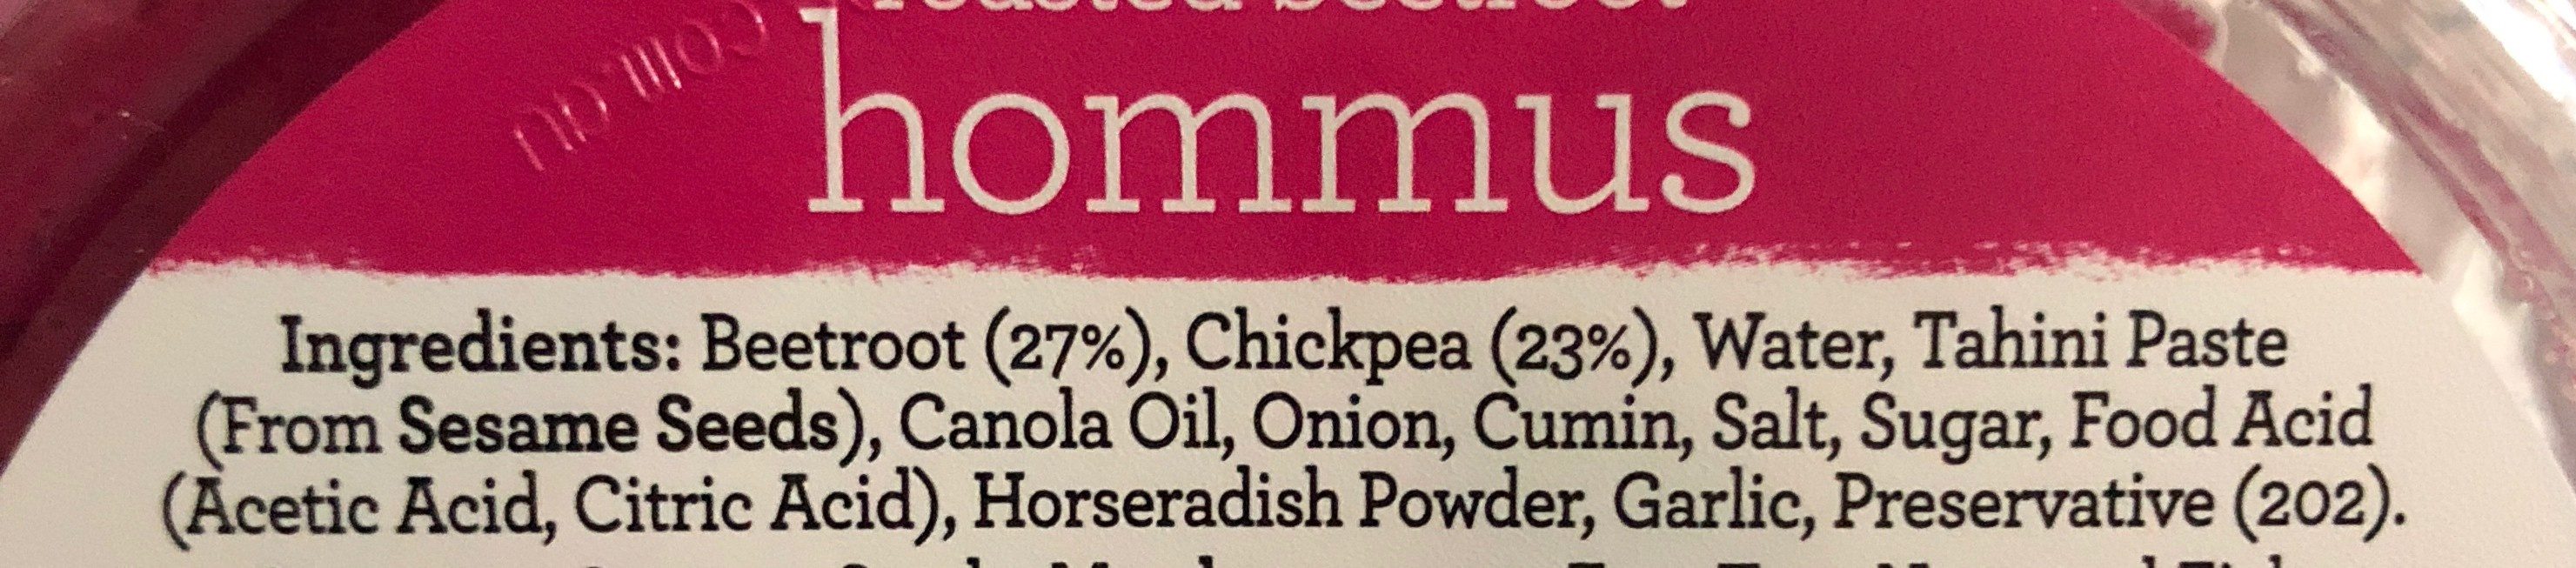 Roasted Beetroot Hommus - Ingredients